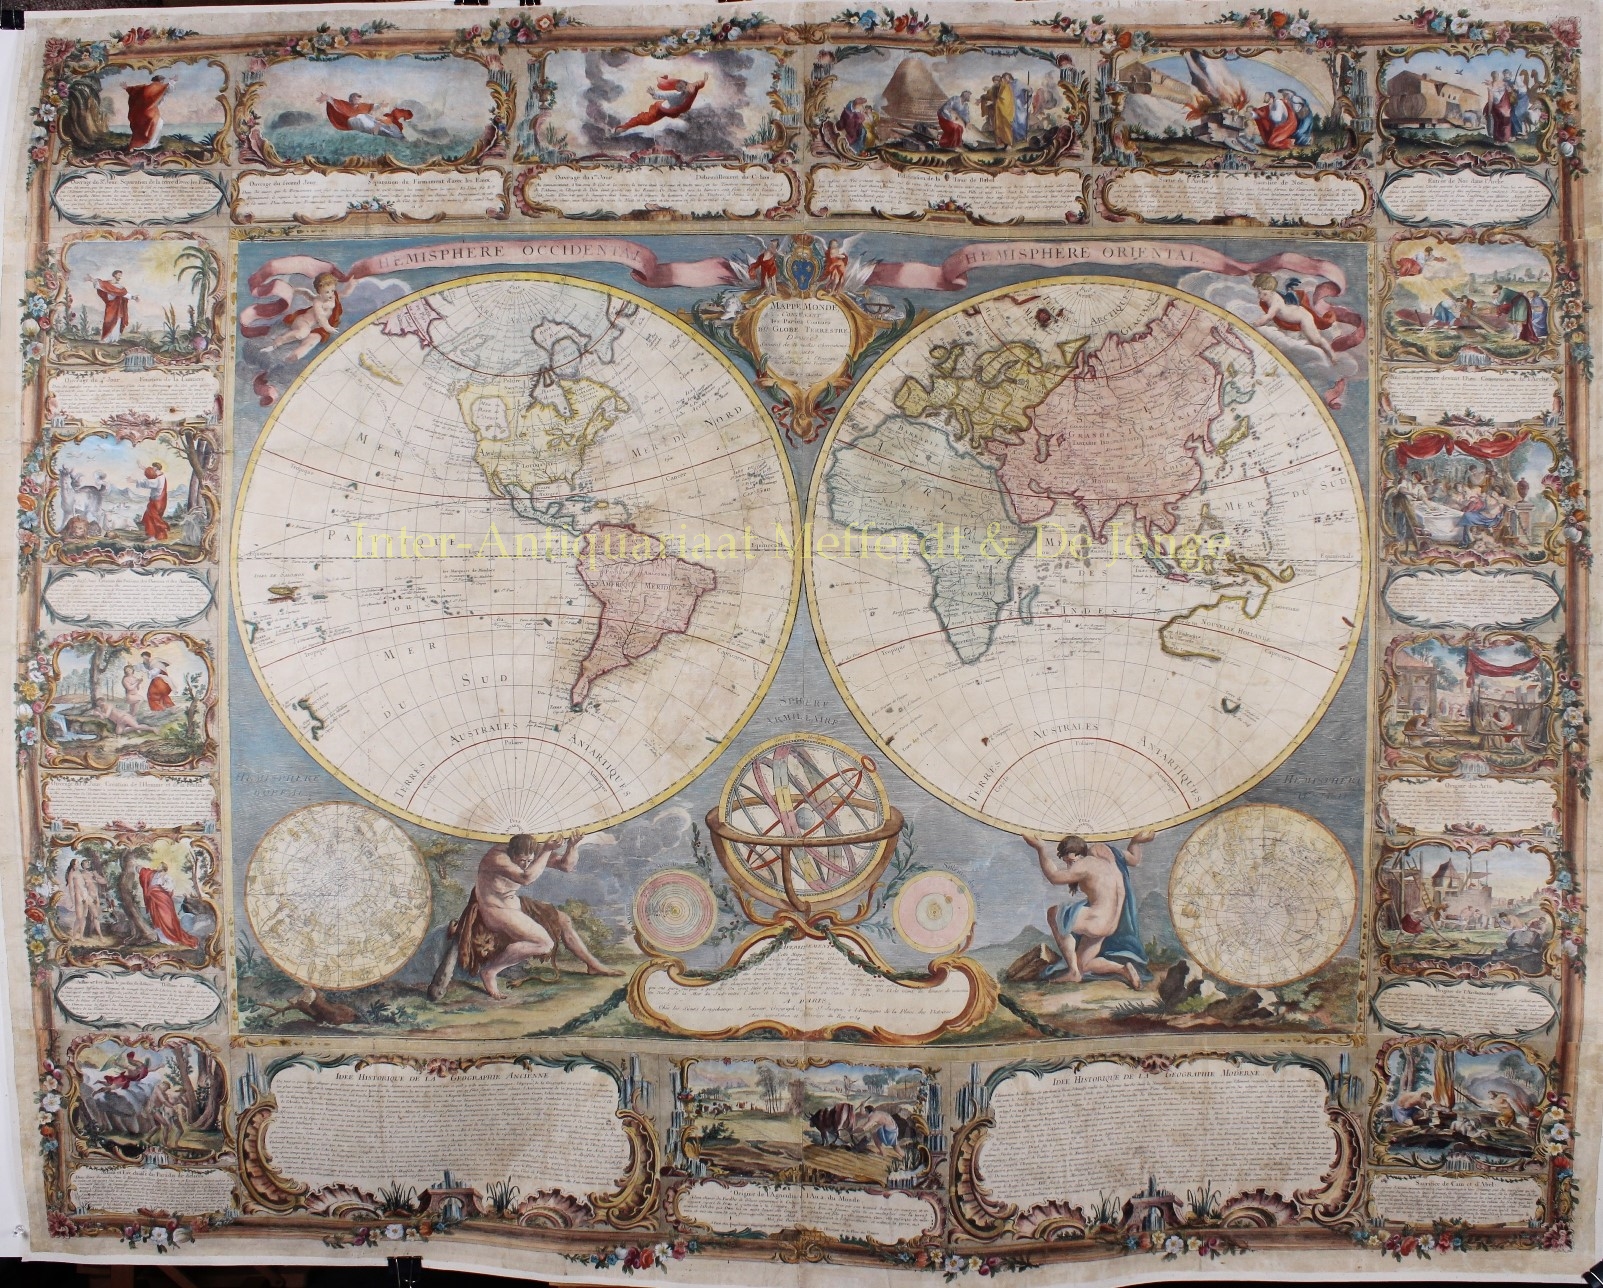  - World map, wall map- Gobert-Denis Chambon, Jean Janvier, S.G. Longschamps, 1754